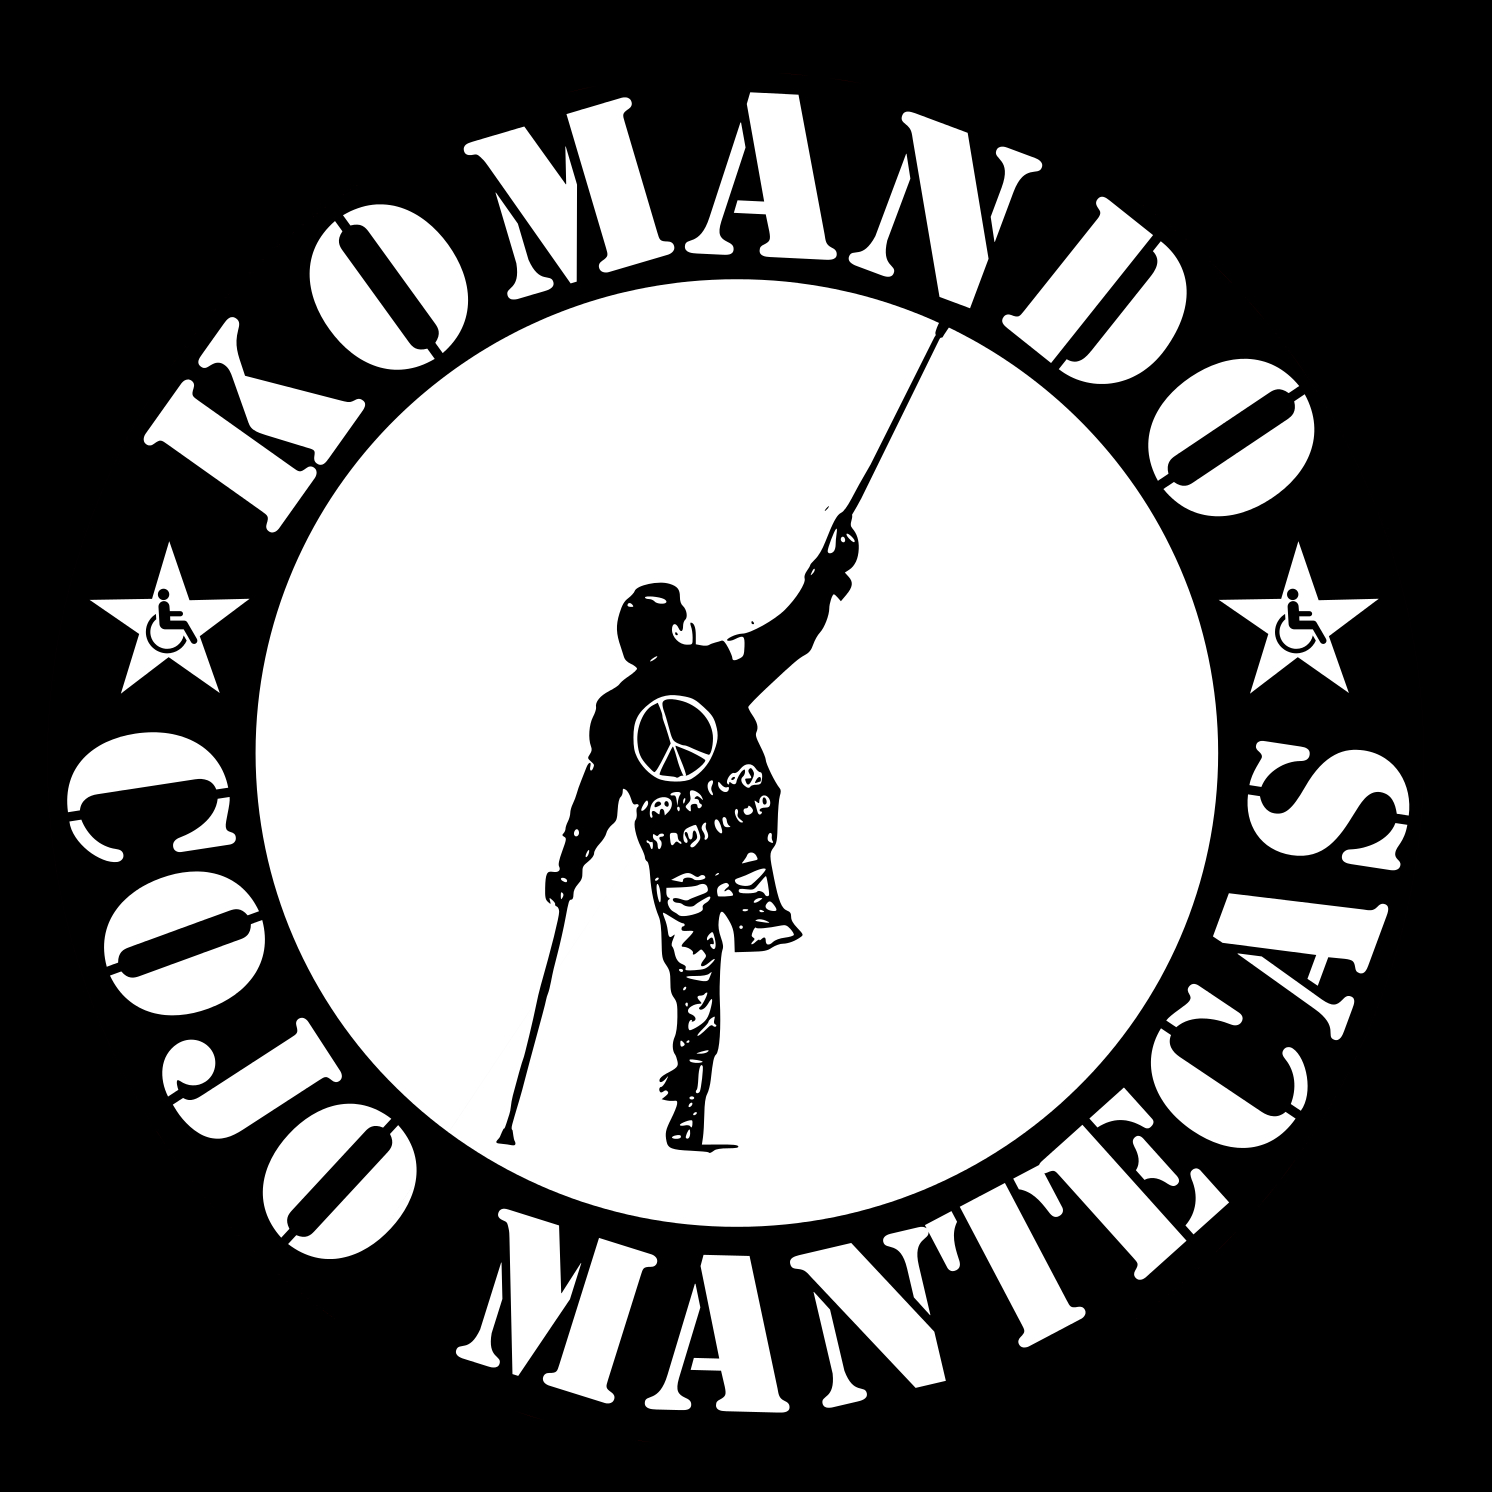 La imagen y el concepto "Komando Cojo Mantecas" está bajo una Licencia Creative Commons Atribución-NoComercial-SinDerivar 4.0 Internacional.